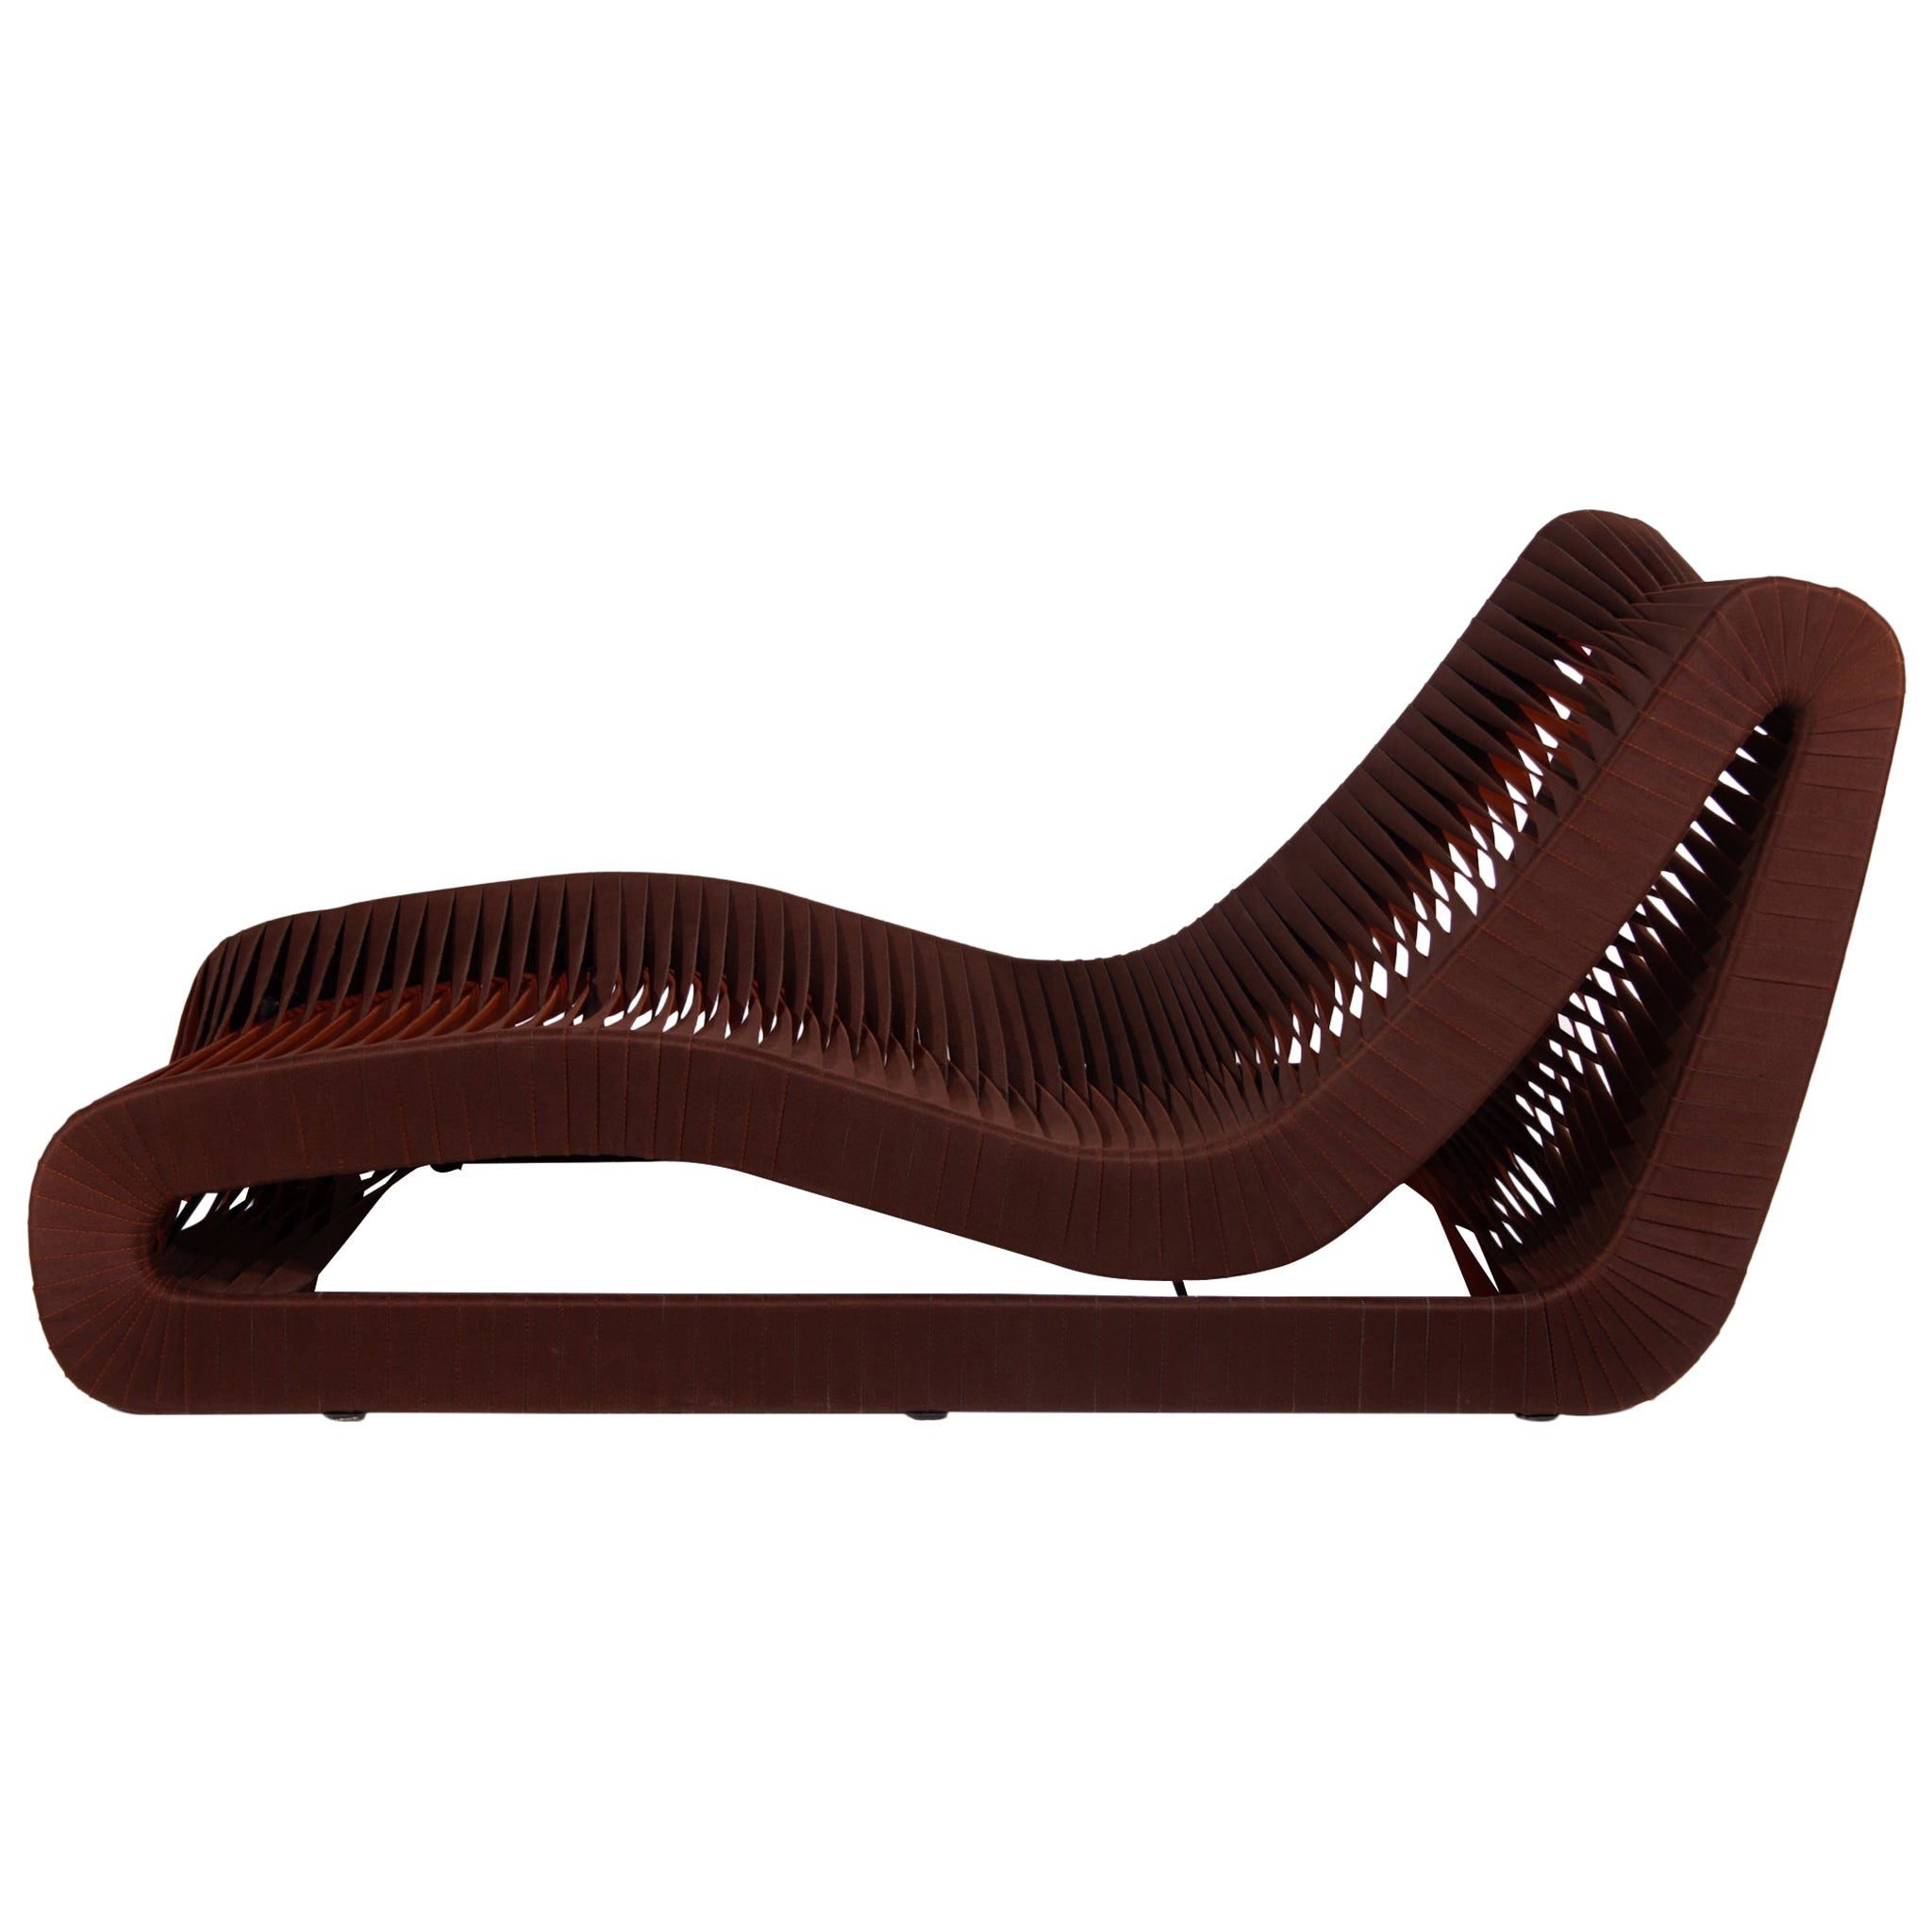 Ein ergonomisches Daybed, Chaise Lounge exquisite Textur, funktionale Einfachheit. Die Chaise Lounge fängt das zeitgenössische Design mit seiner idealen Balance zwischen Form und Funktion ein und hebt das Konzept der Chaise Lounge auf eine neue